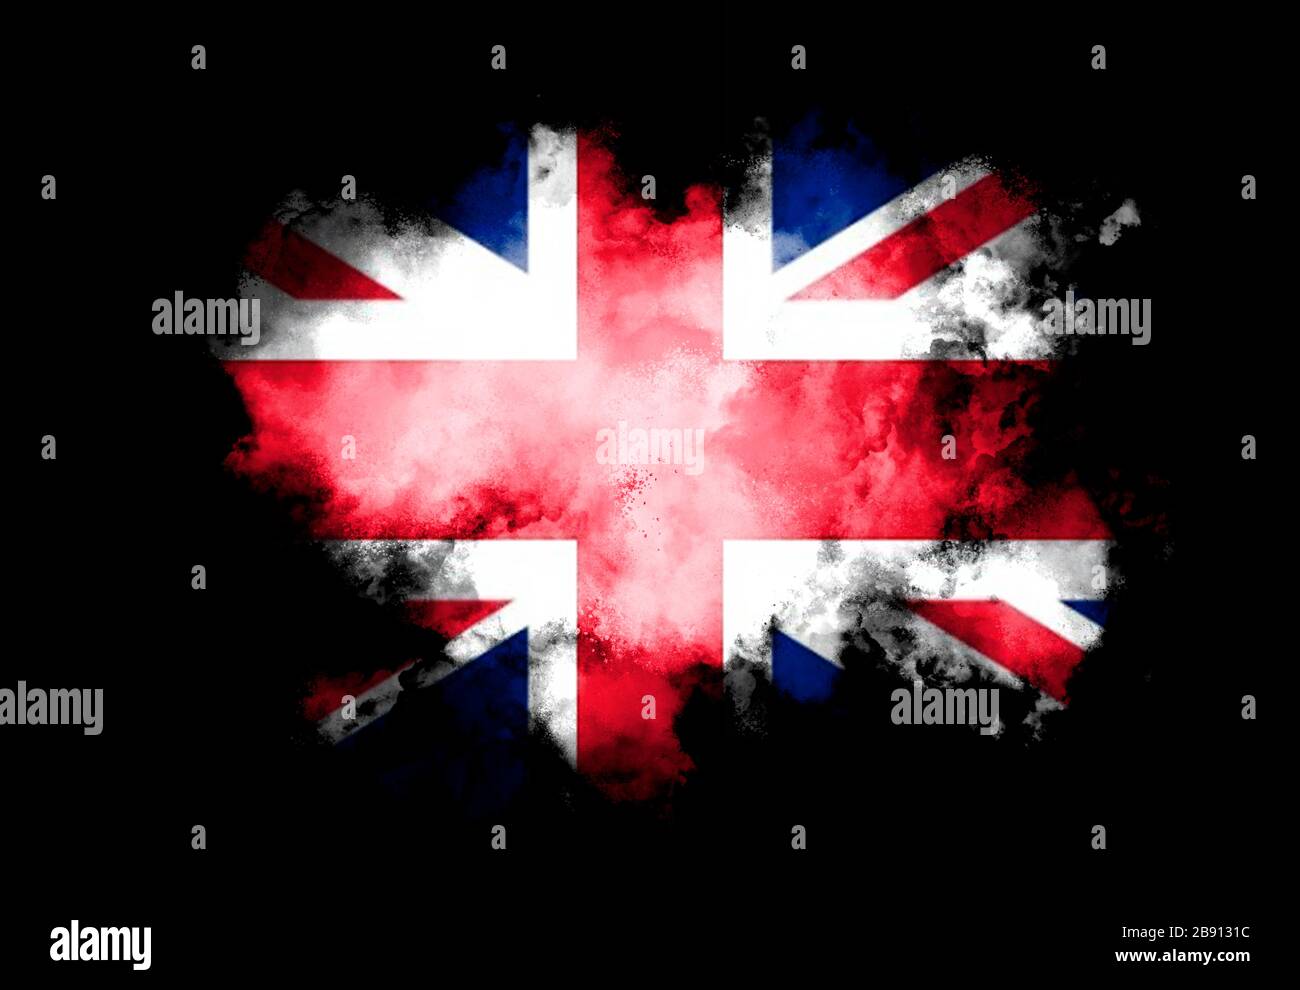 UK Flag và pháo hoa màu sắc - Hãy đến và ngắm nhìn bức ảnh khi UK Flag được kết hợp với những sắc màu lung linh của pháo hoa, tạo ra một cảm giác hoành tráng và sôi động.